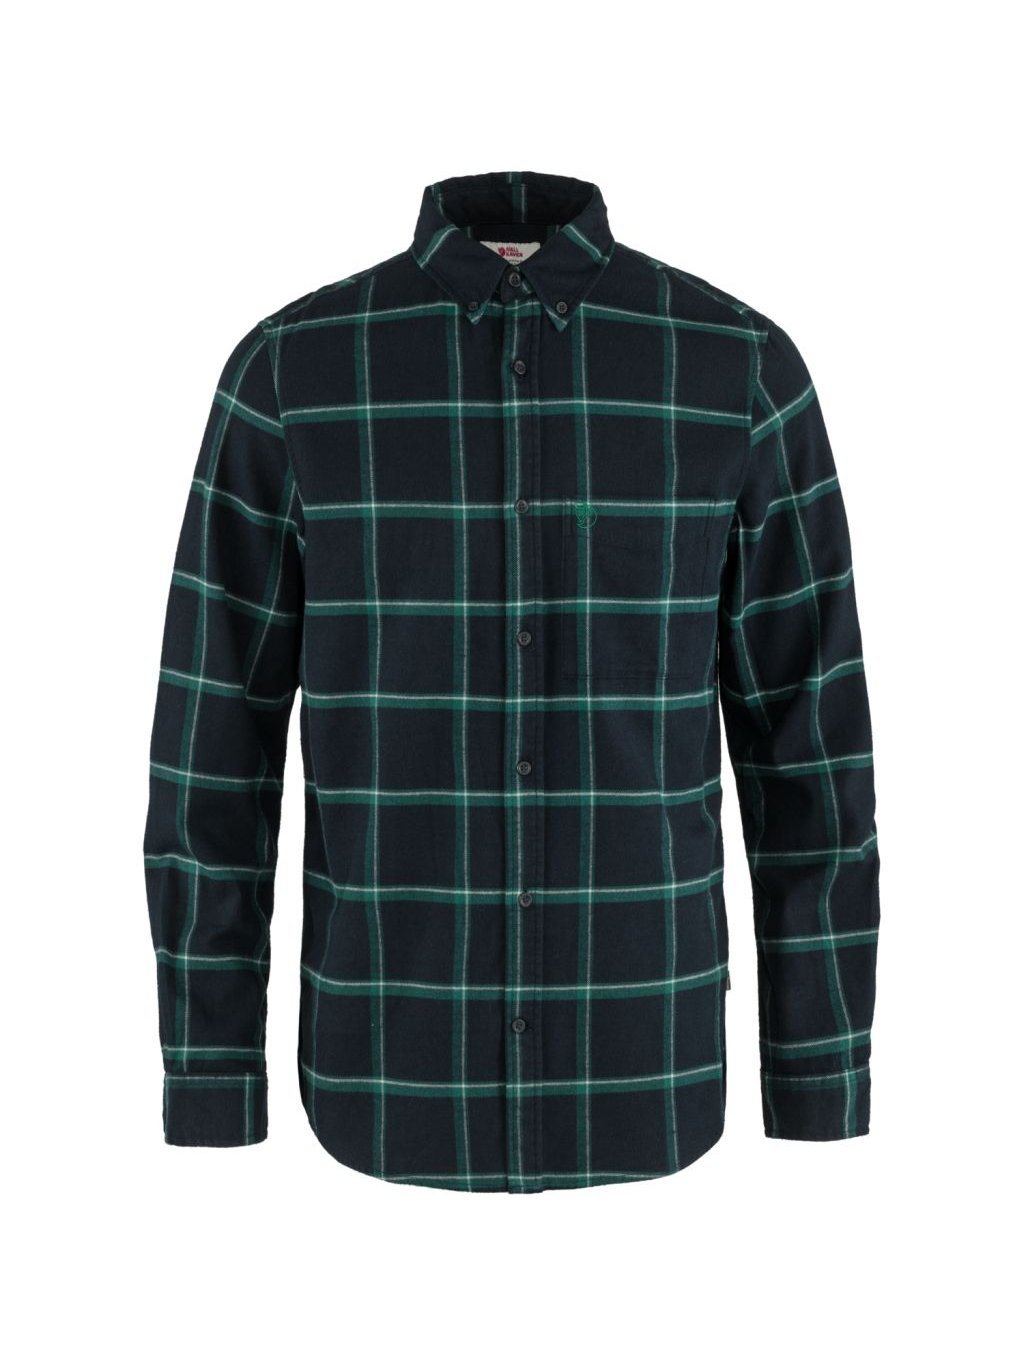 FJÄLLRÄVEN Övik Relaxed Flannel Shirt M, Dark Navy/Arctic Green - OUTDOOR  SHOPS